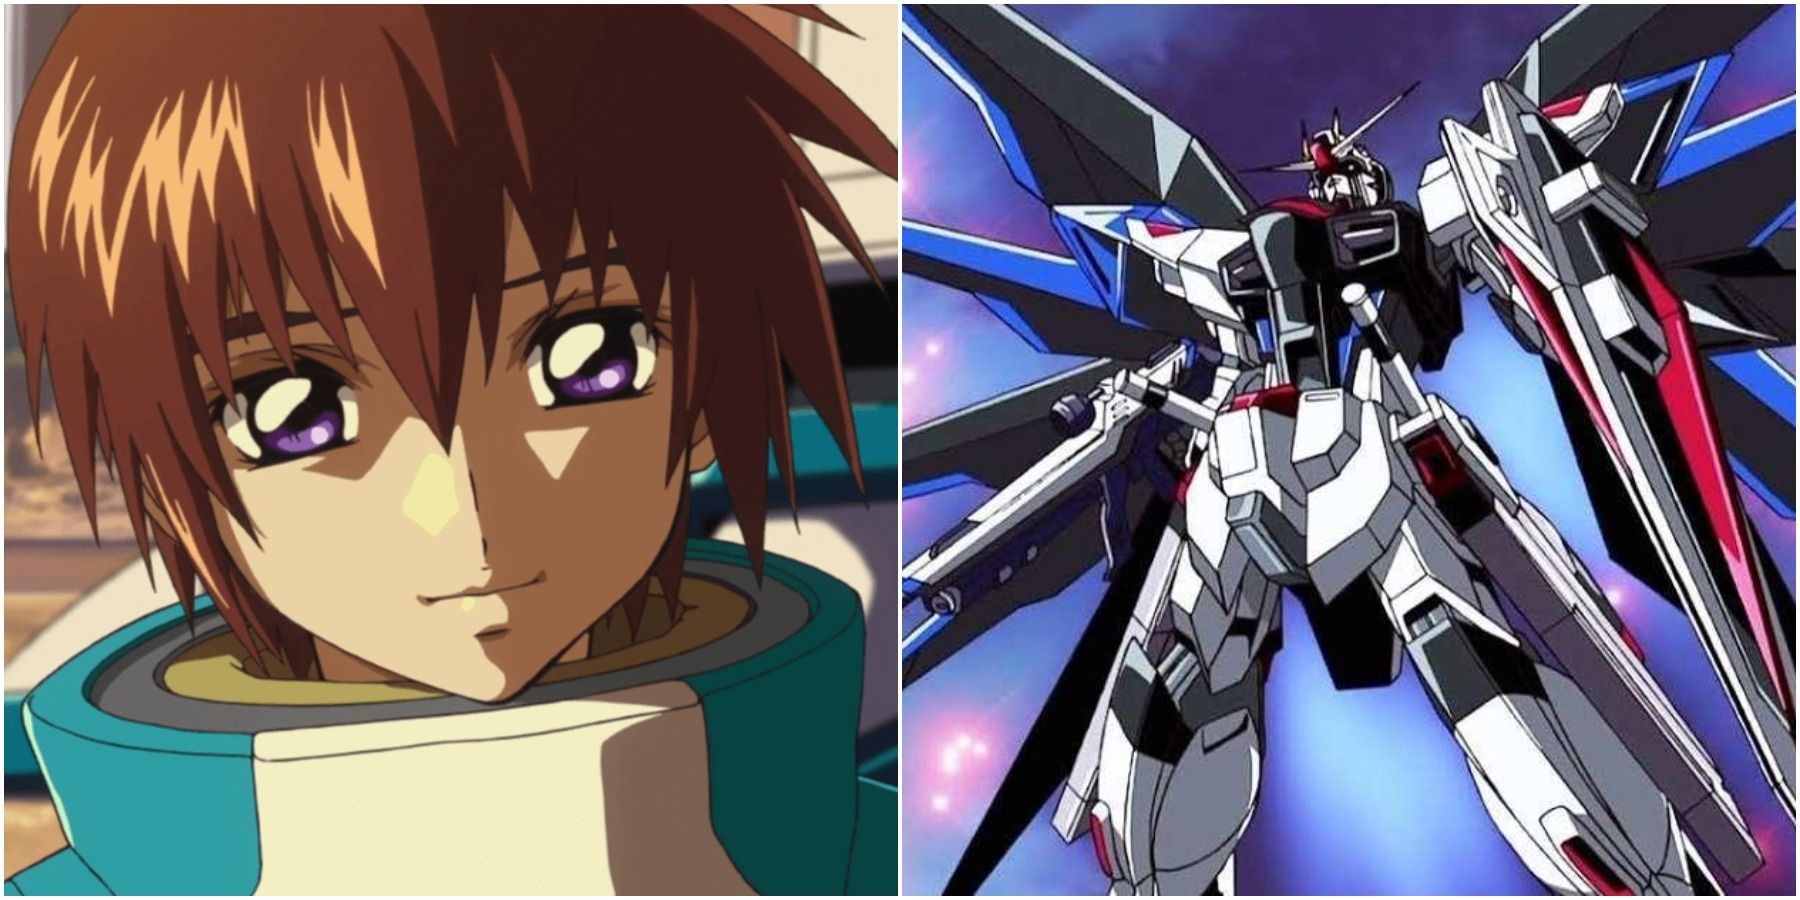 Kira & His Strike Freedom Gundam